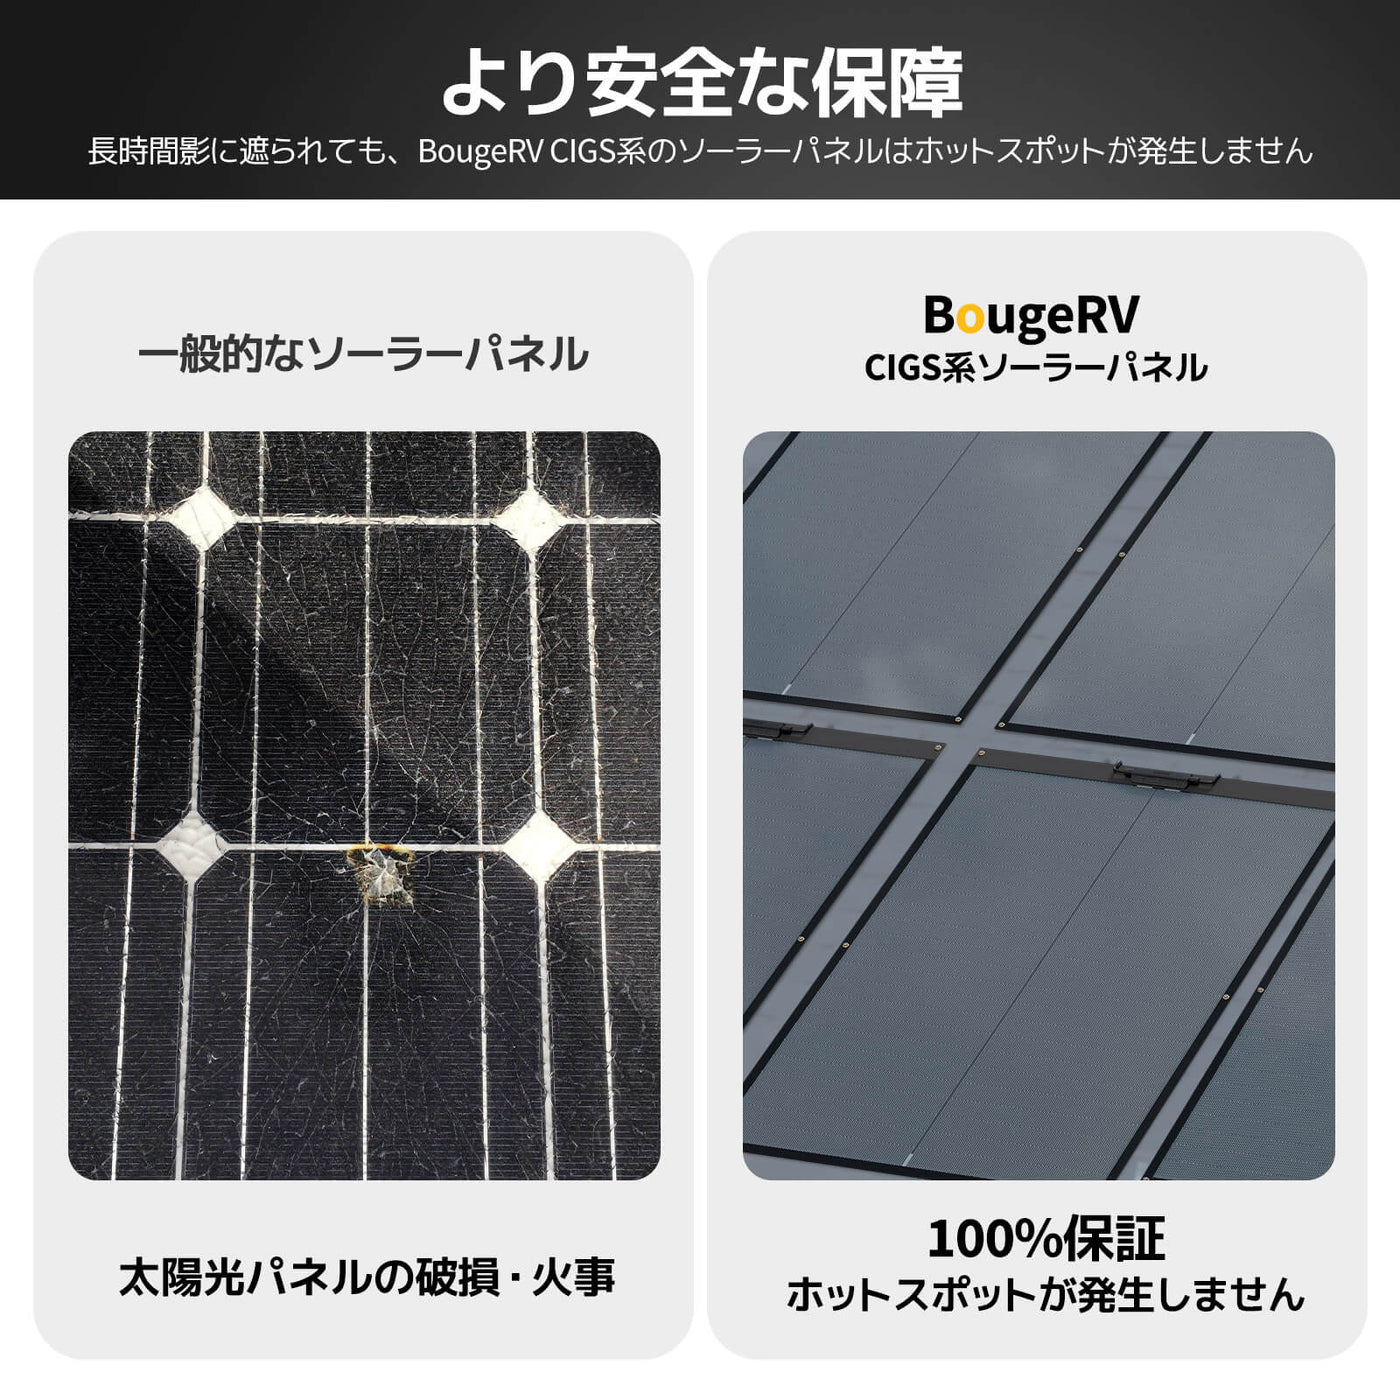 BougeRV Yuma CIGSソーラーパネル|太陽光パネル·軽量薄型で360°曲げ 